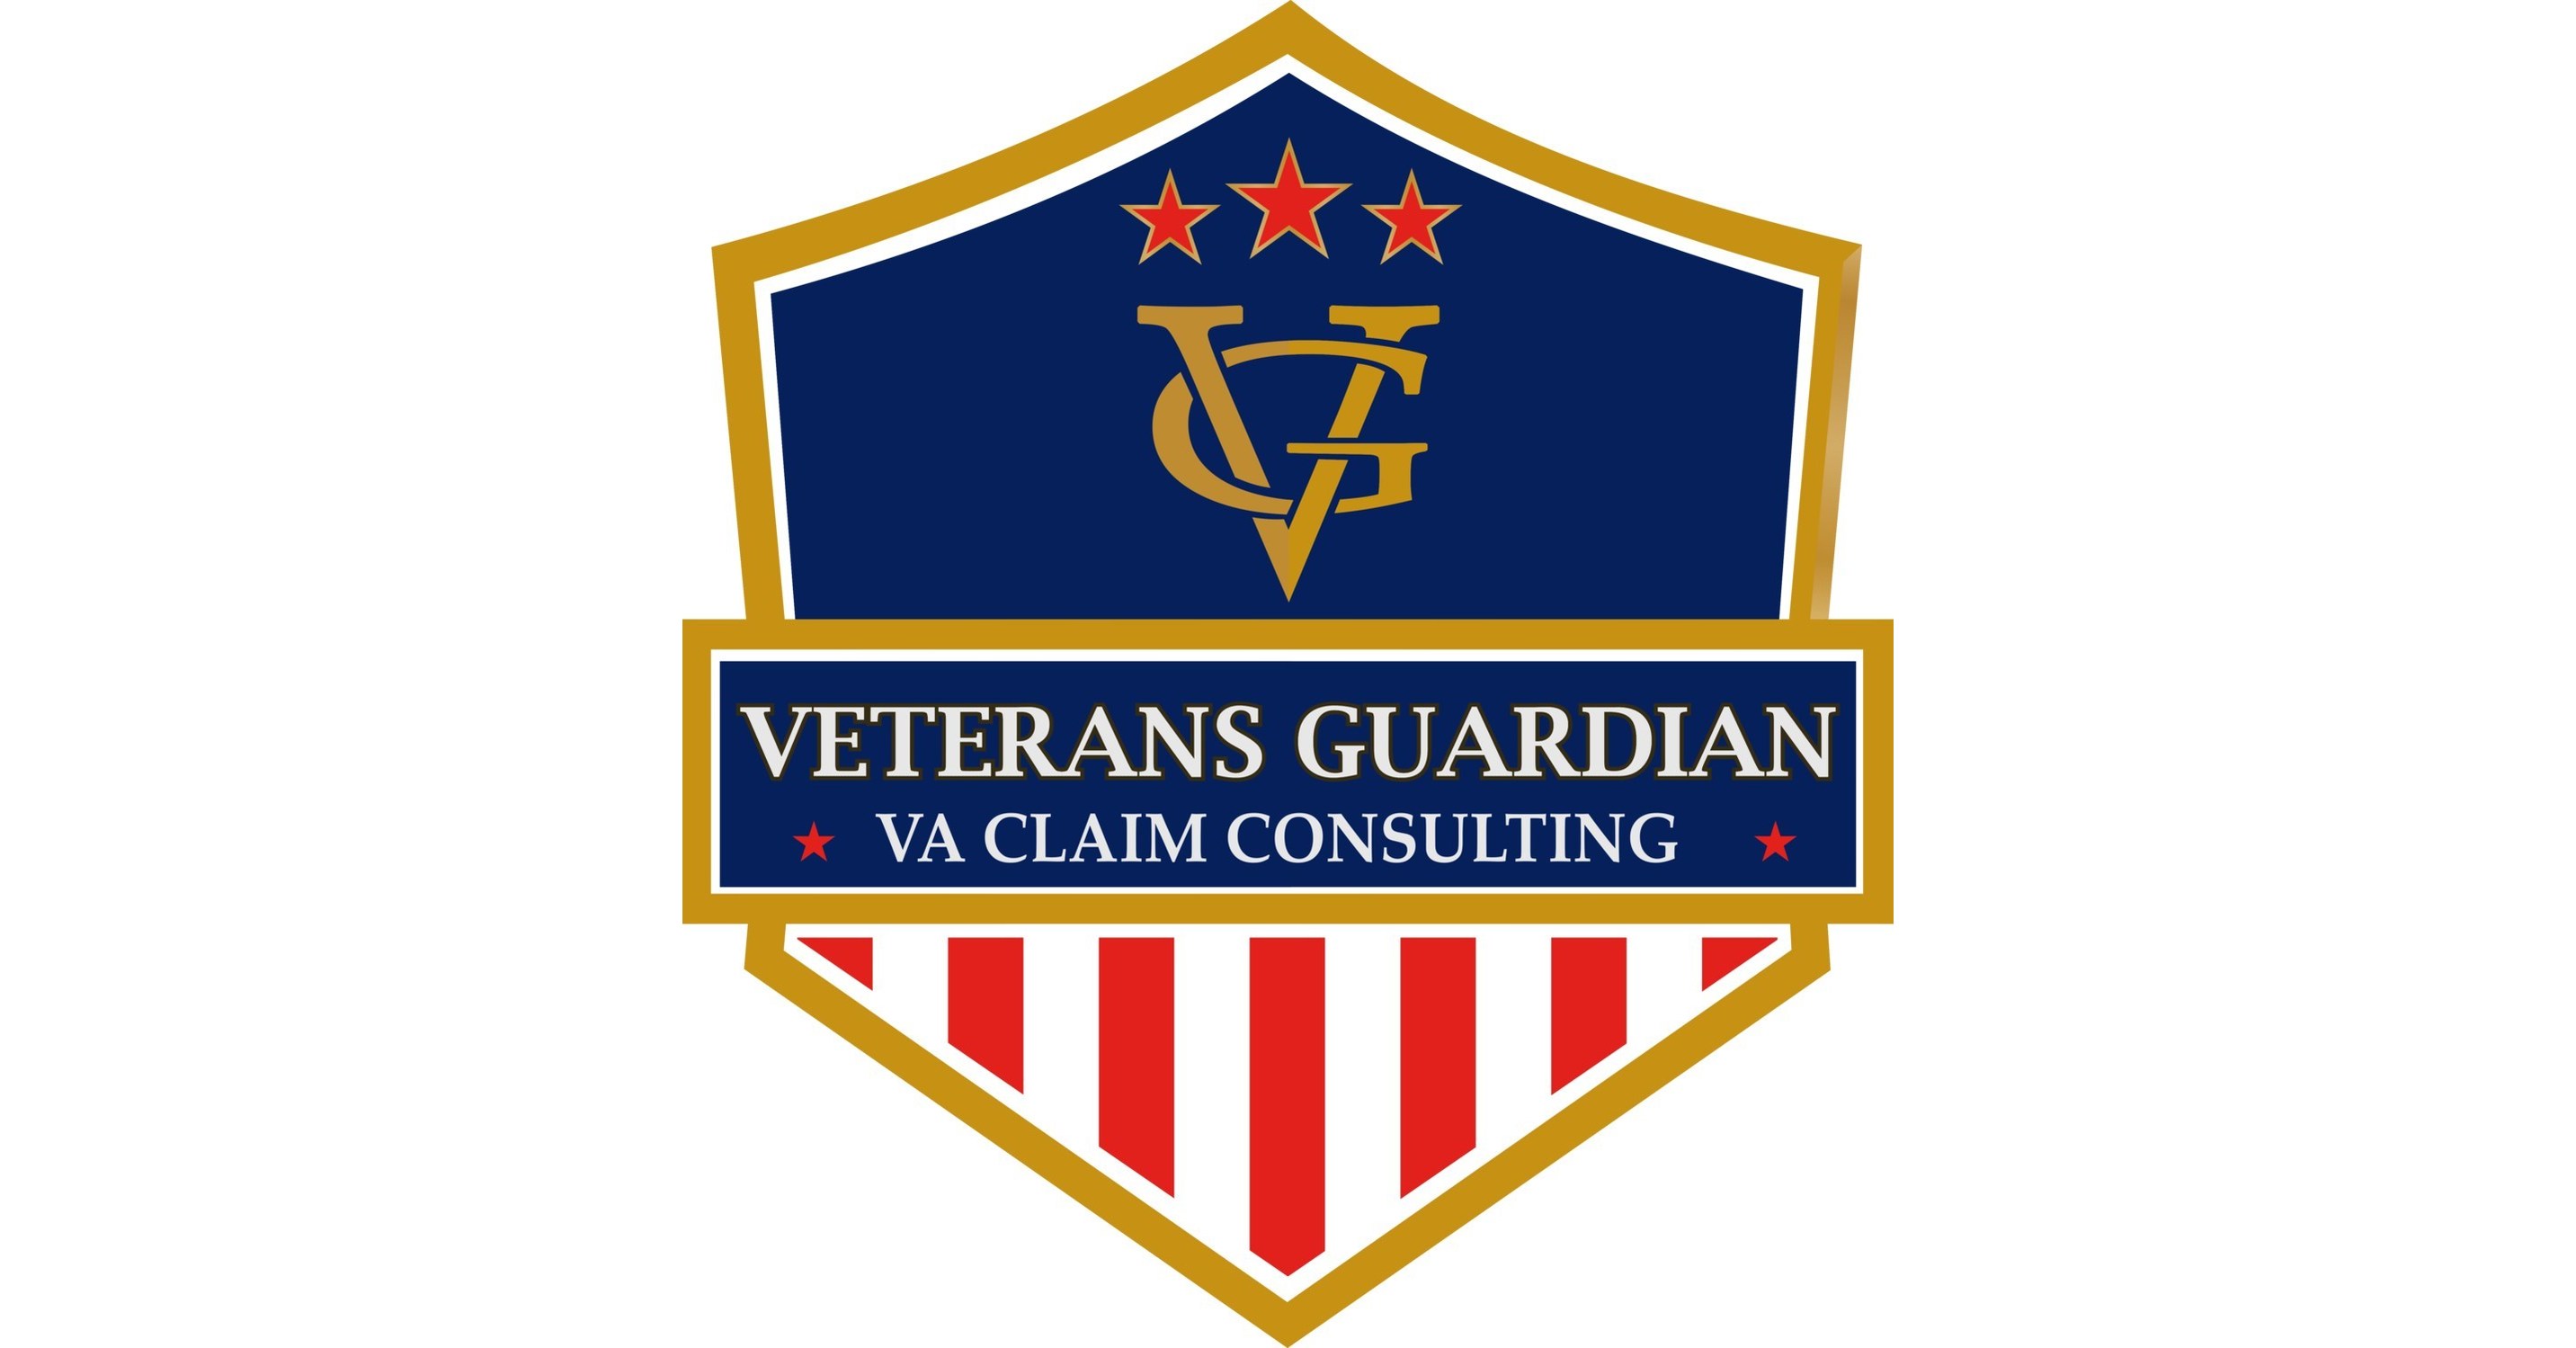 Veterans Guardian Winner of 2021 BBB Torch Award For Ethics